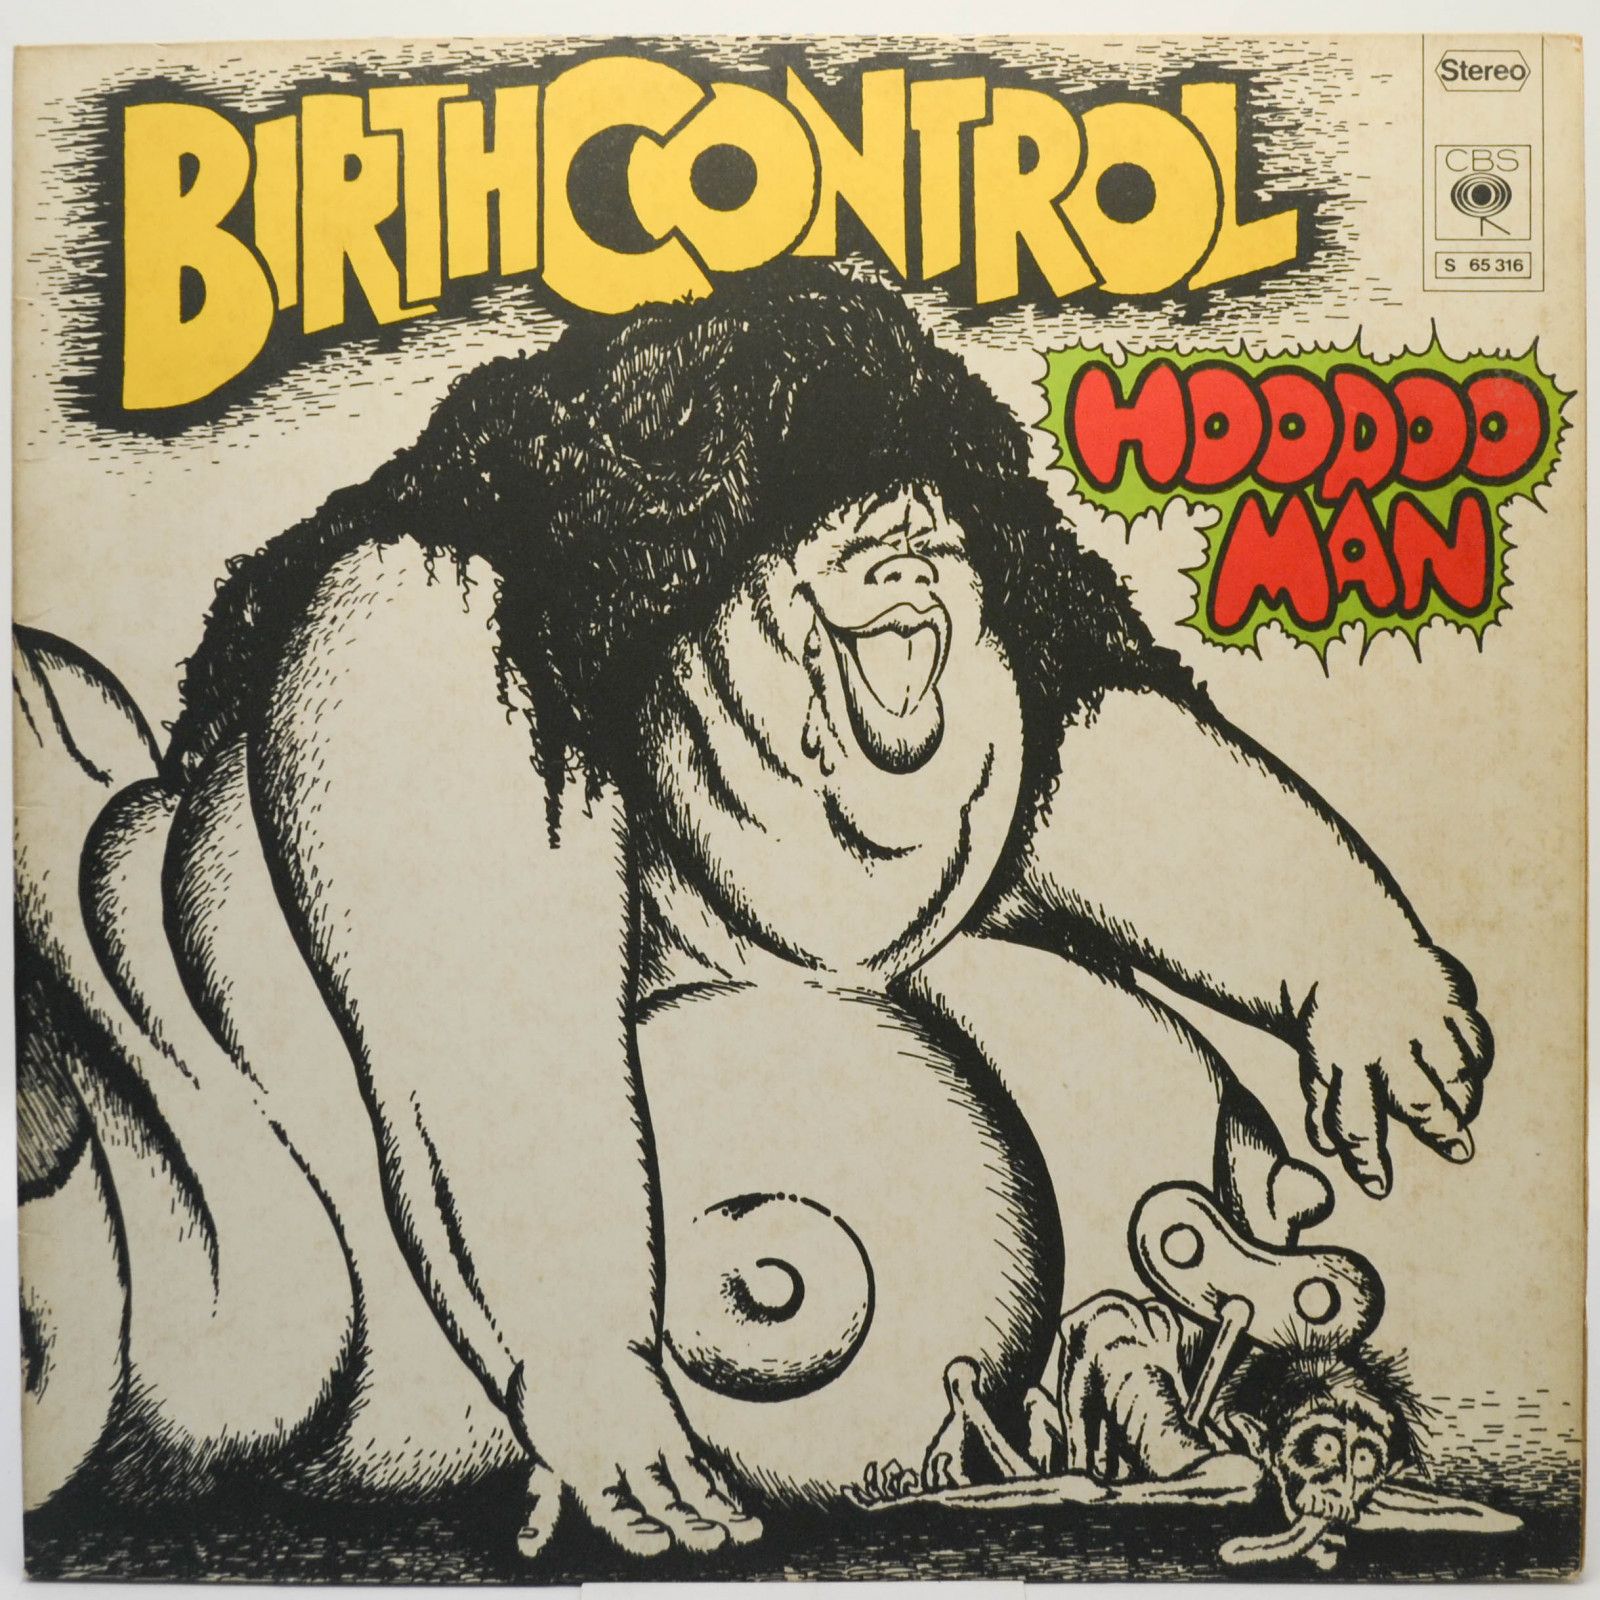 Birth Control — Hoodoo Man, 1972